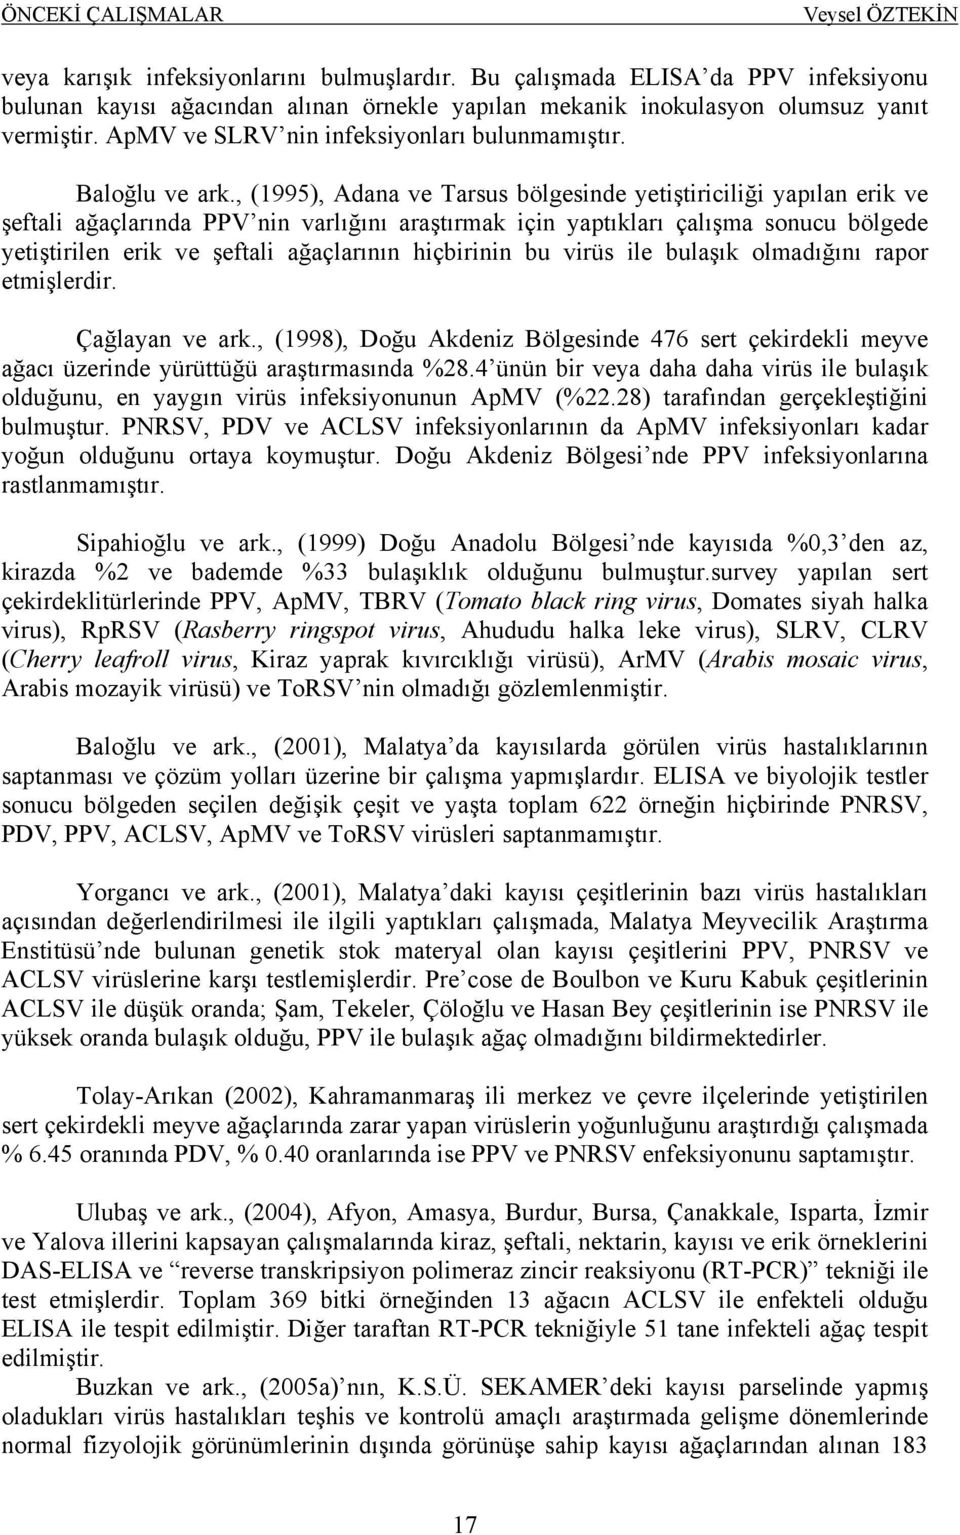 , (1995), Adana ve Tarsus bölgesinde yetiştiriciliği yapılan erik ve şeftali ağaçlarında PPV nin varlığını araştırmak için yaptıkları çalışma sonucu bölgede yetiştirilen erik ve şeftali ağaçlarının